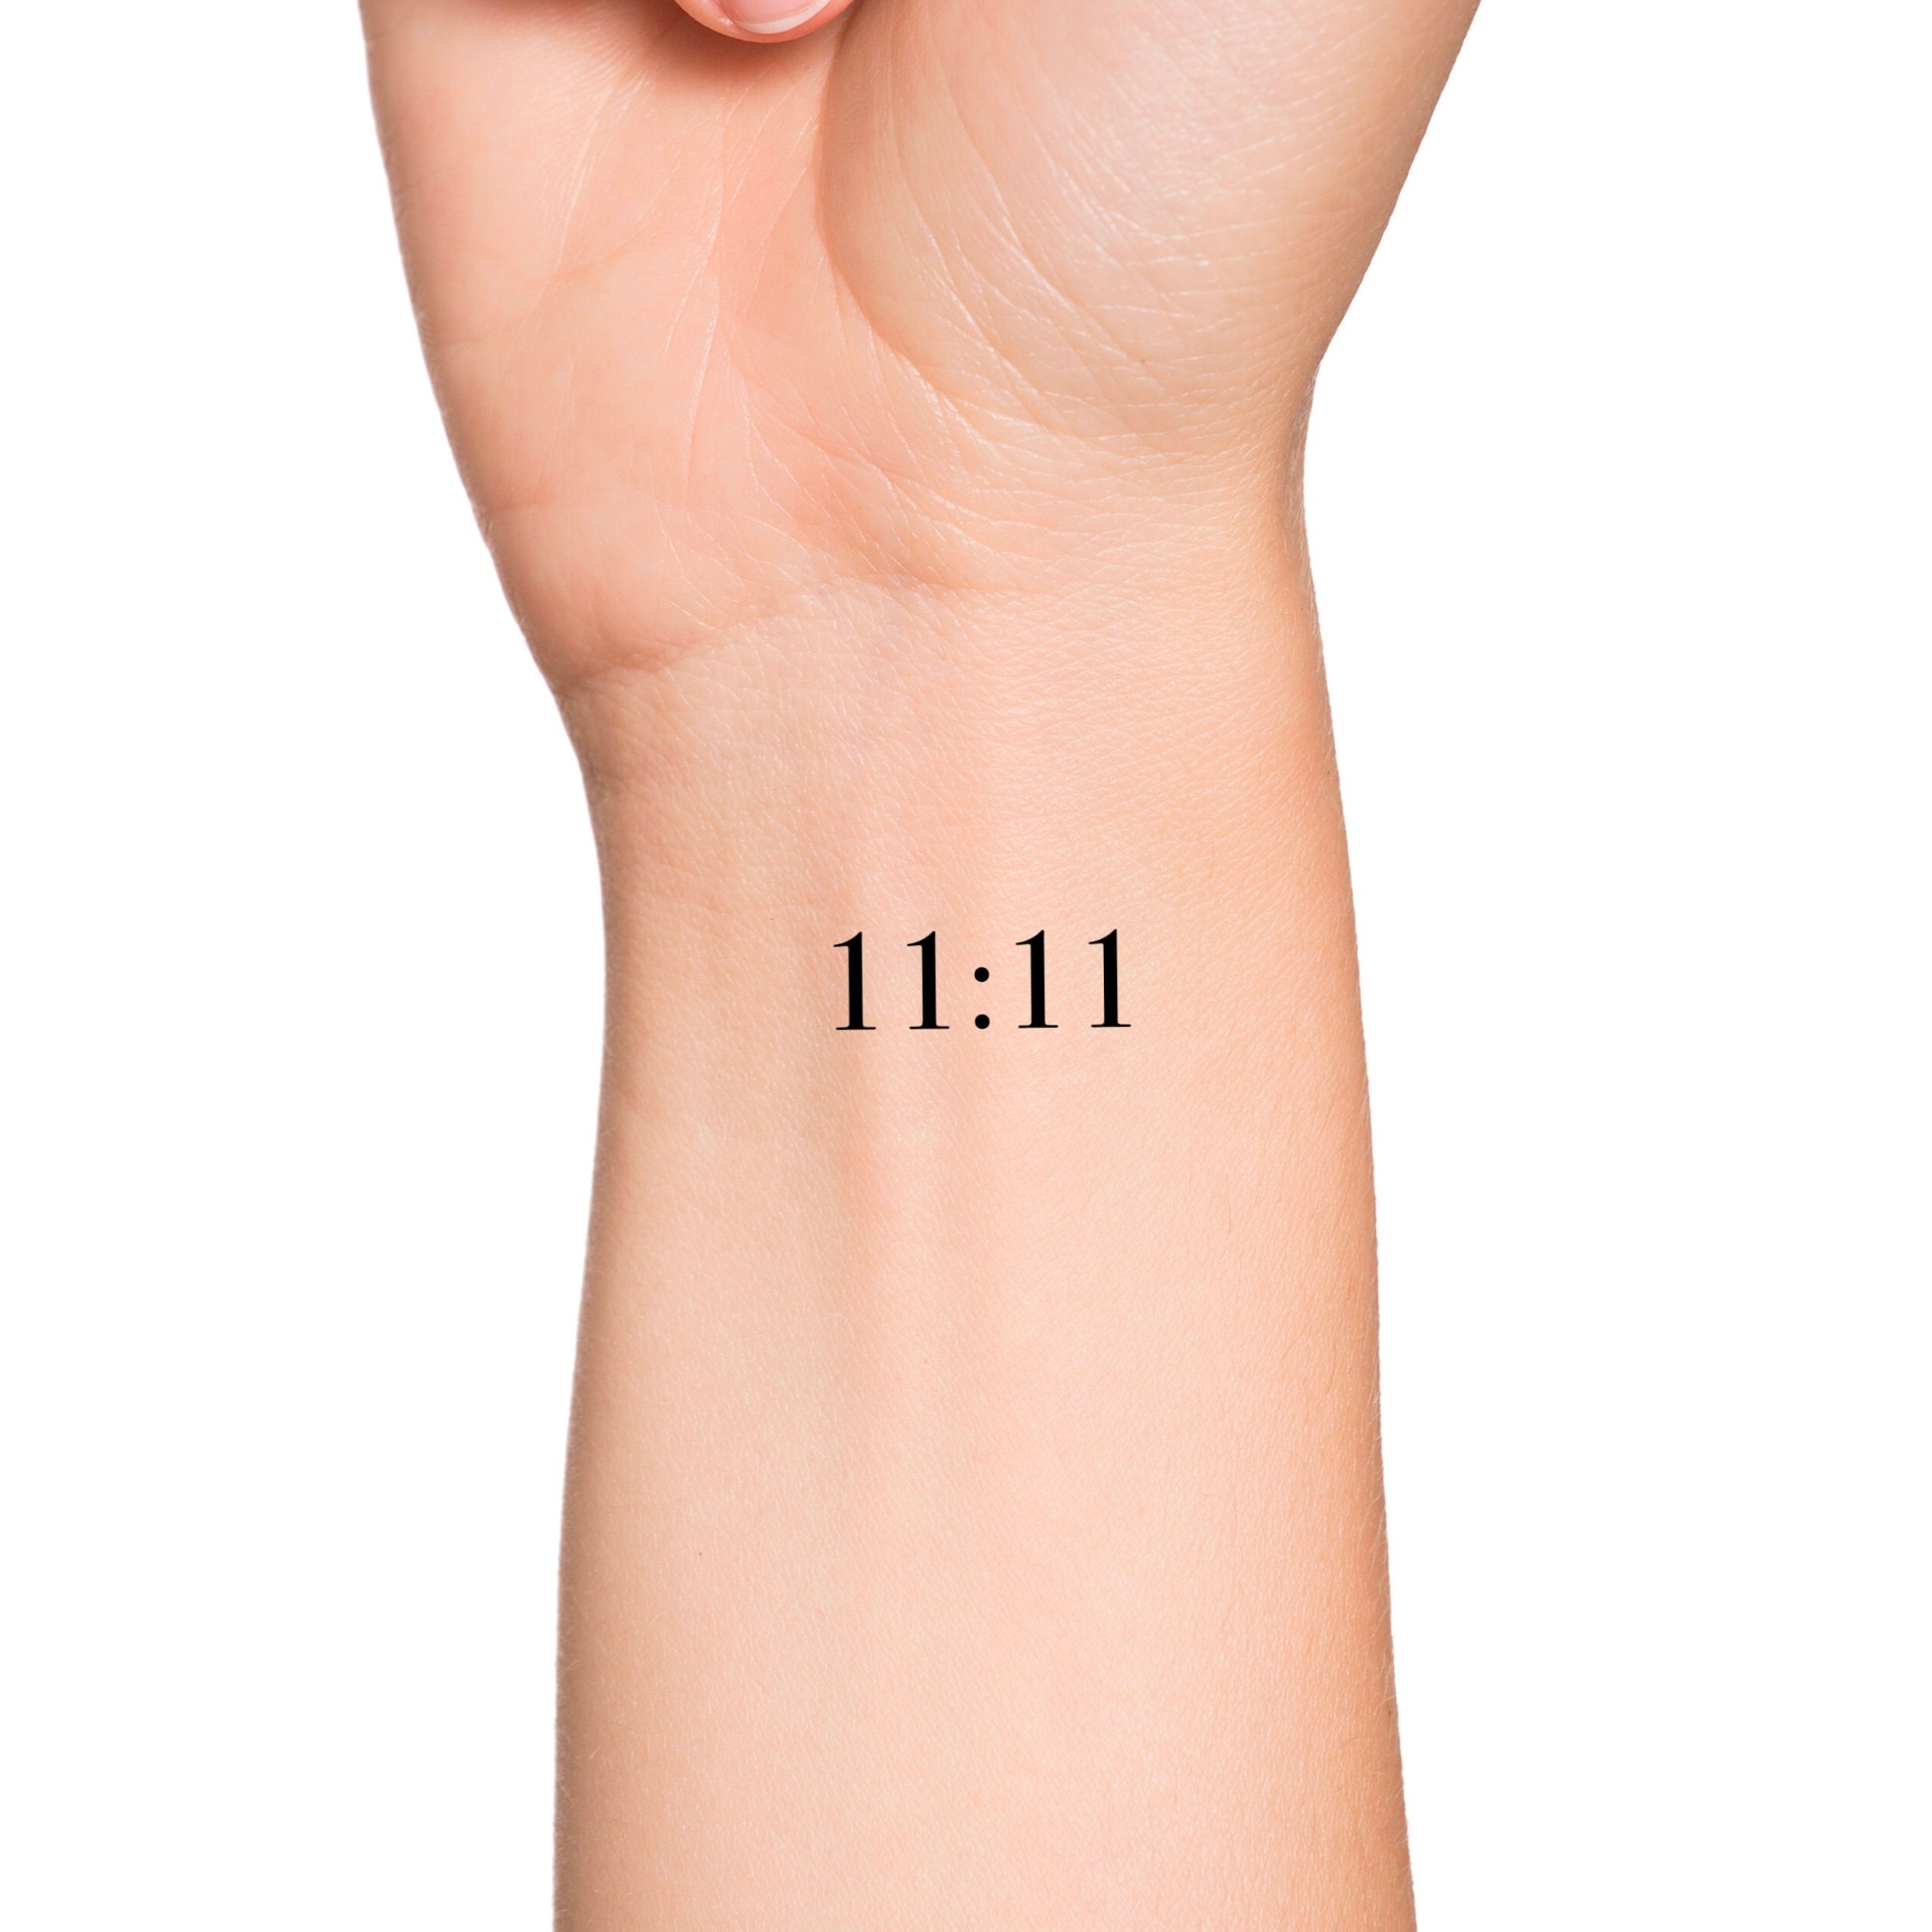 11 11 tattoo wrist